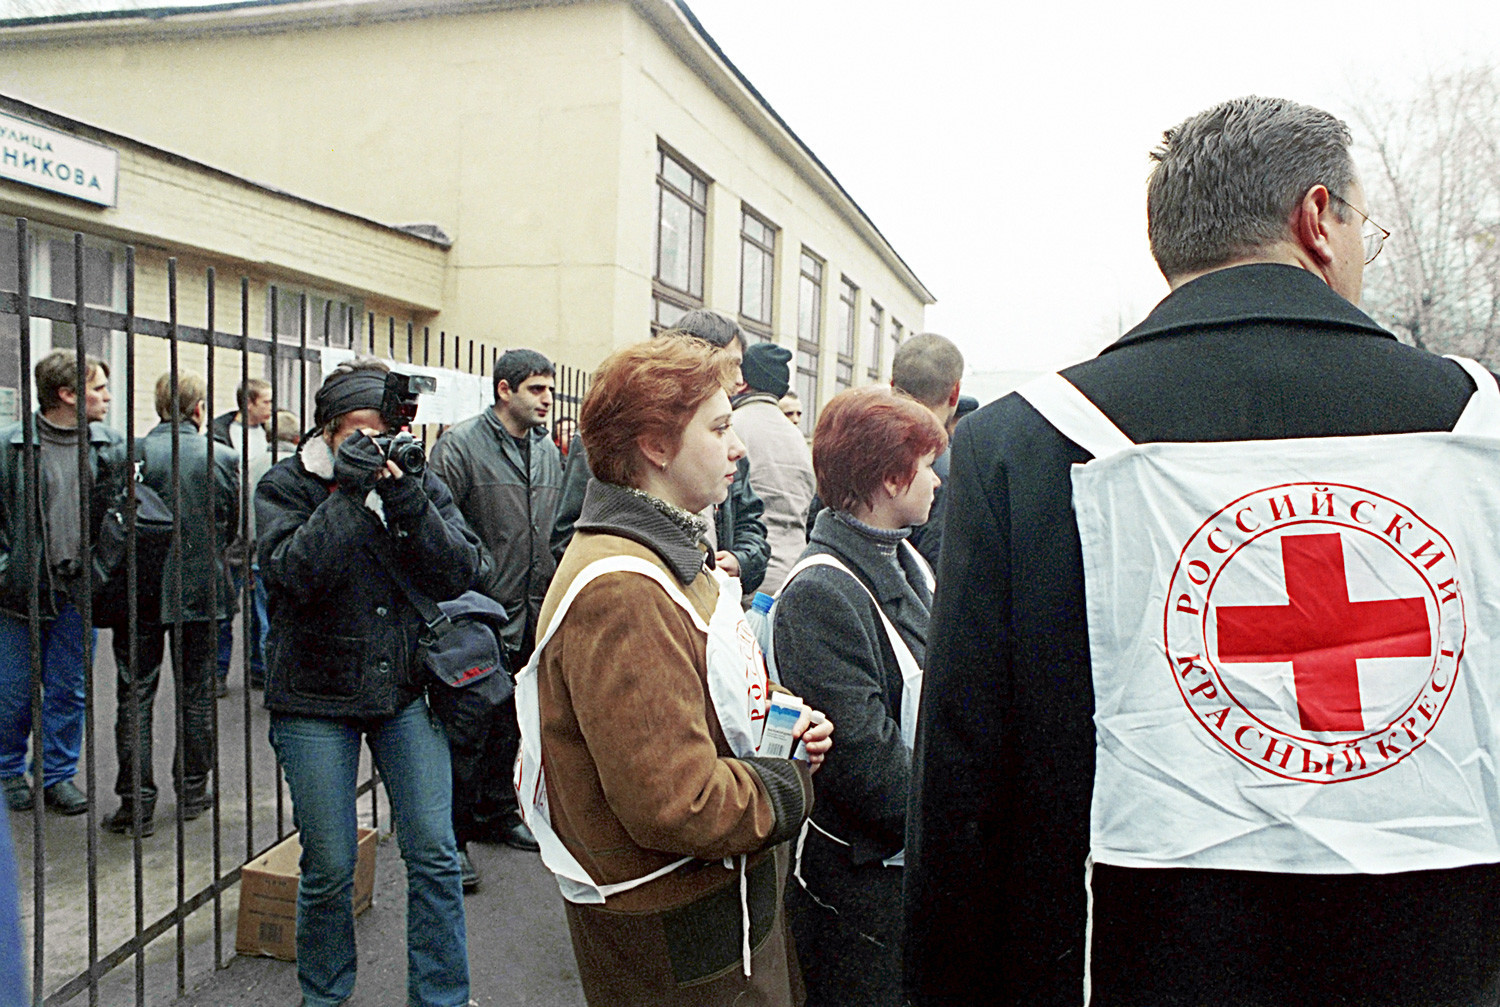 Predstavnici Ruskog Crvenog križa ispred Kazališnog centra na Dubrovki (Moskva), koji su 23. listopada 2002. napali čečenski teroristi.

